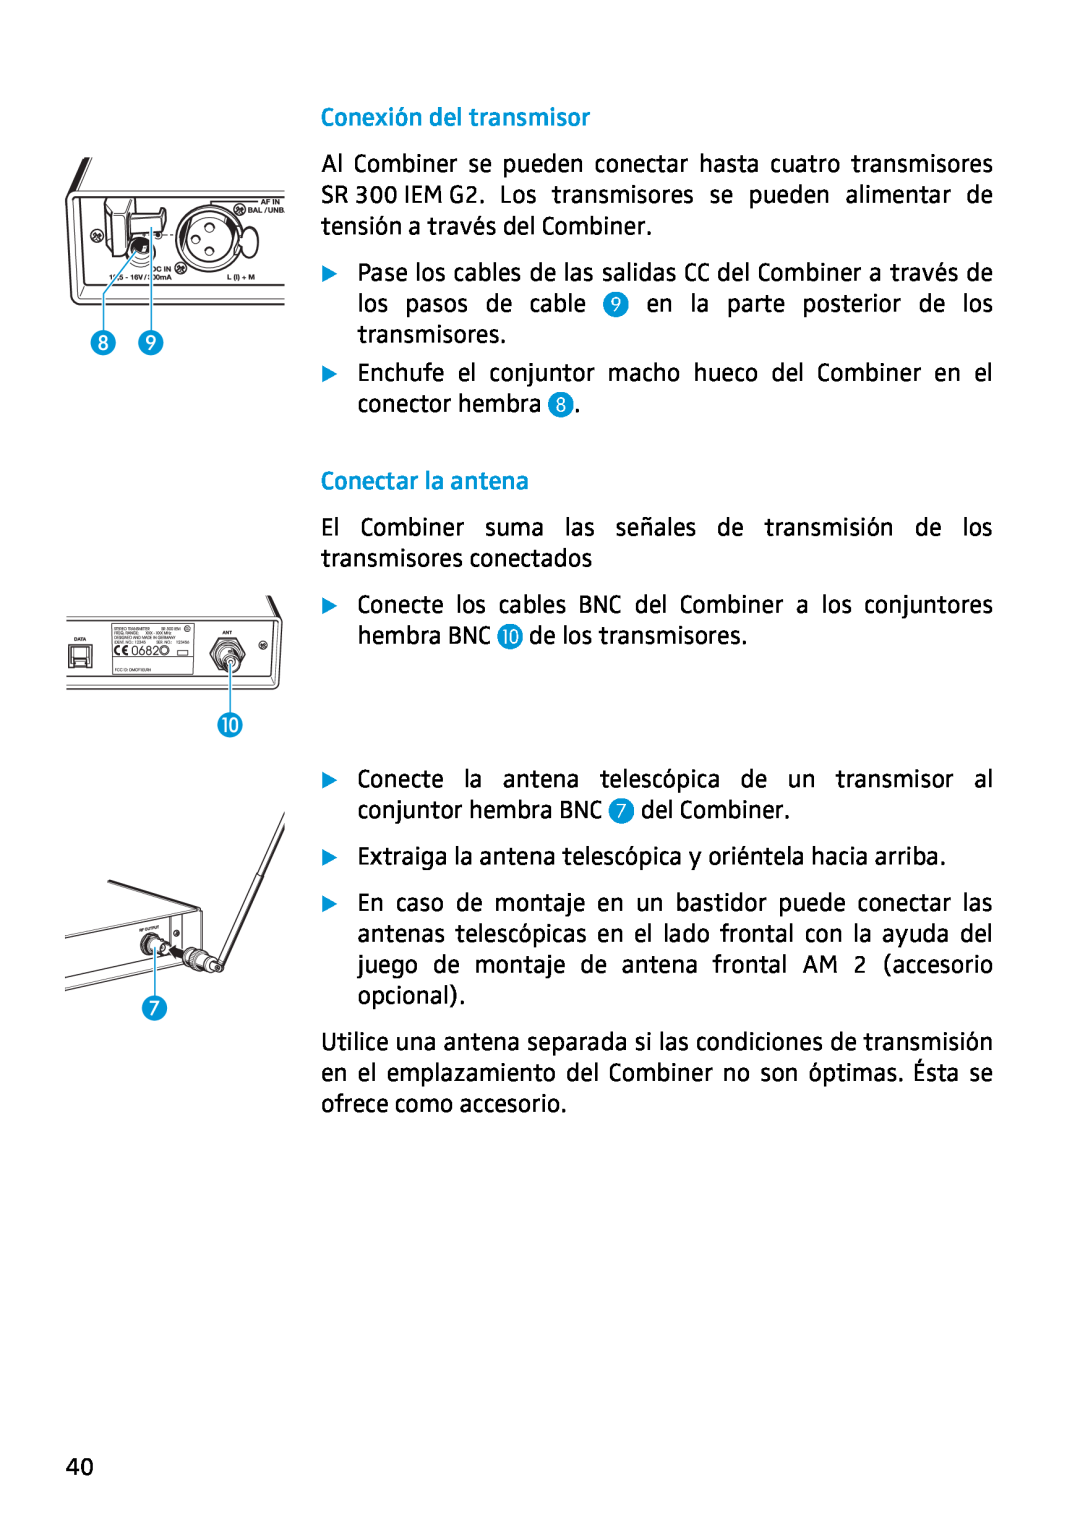 Sennheiser AC2 manual Conexión del transmisor, Conectar la antena, los pasos de cable 